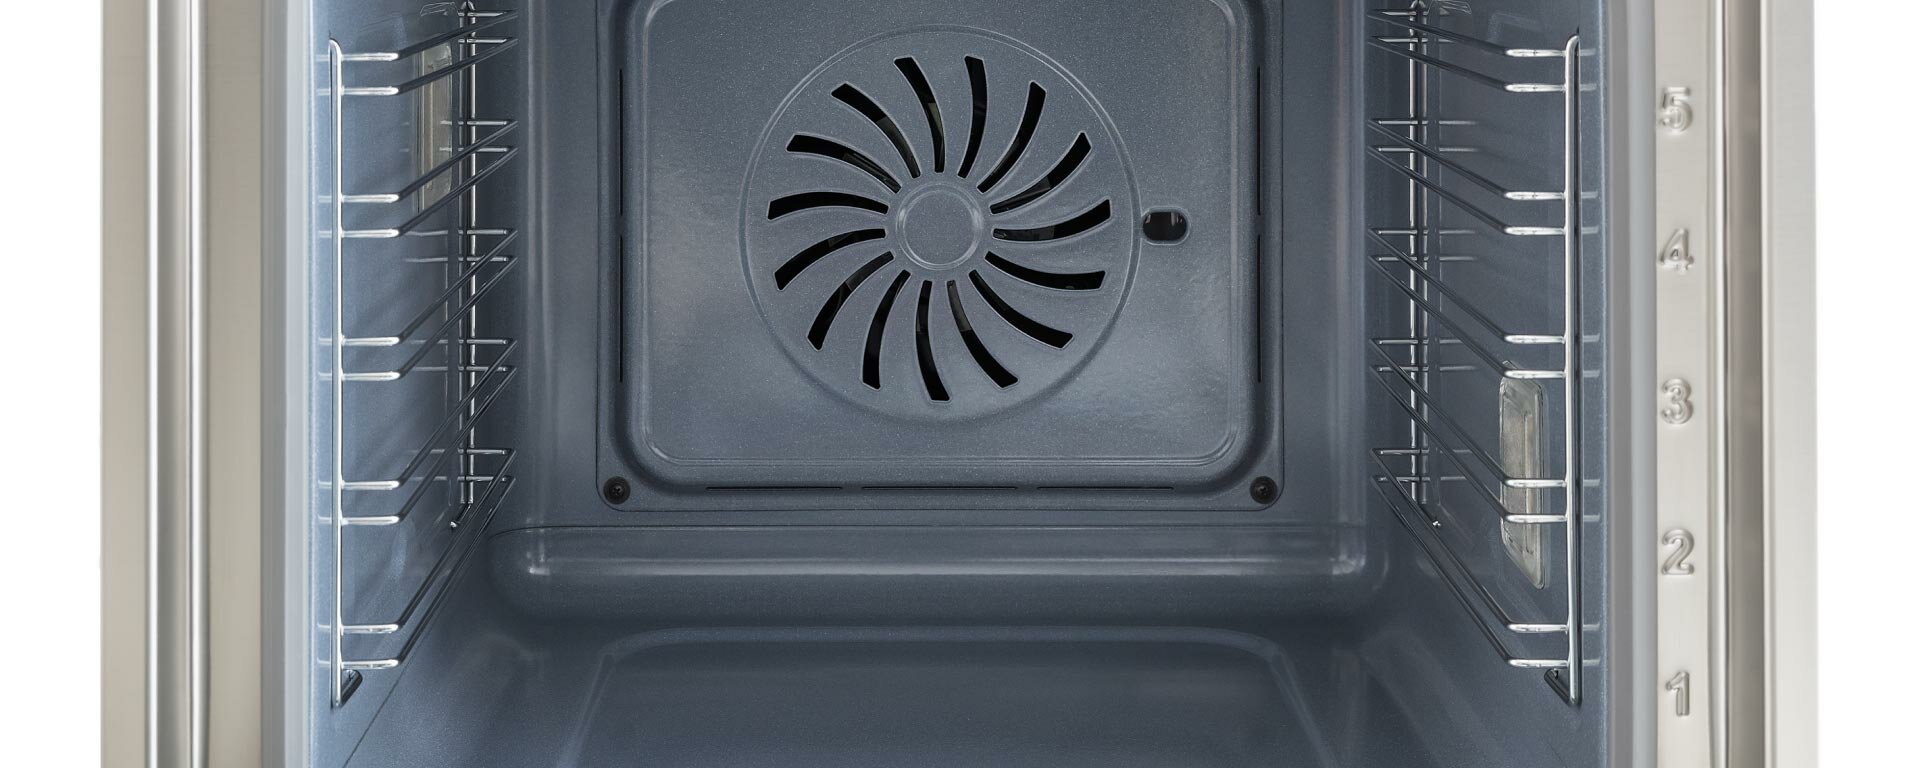 F6011MODVTX Электрический встраиваемый духовой шкаф Bertazzoni, с функцией пара Total steam и полностью сенсорным дисплеем (TFT), 60 см Нержавеющая сталь - фотография № 7